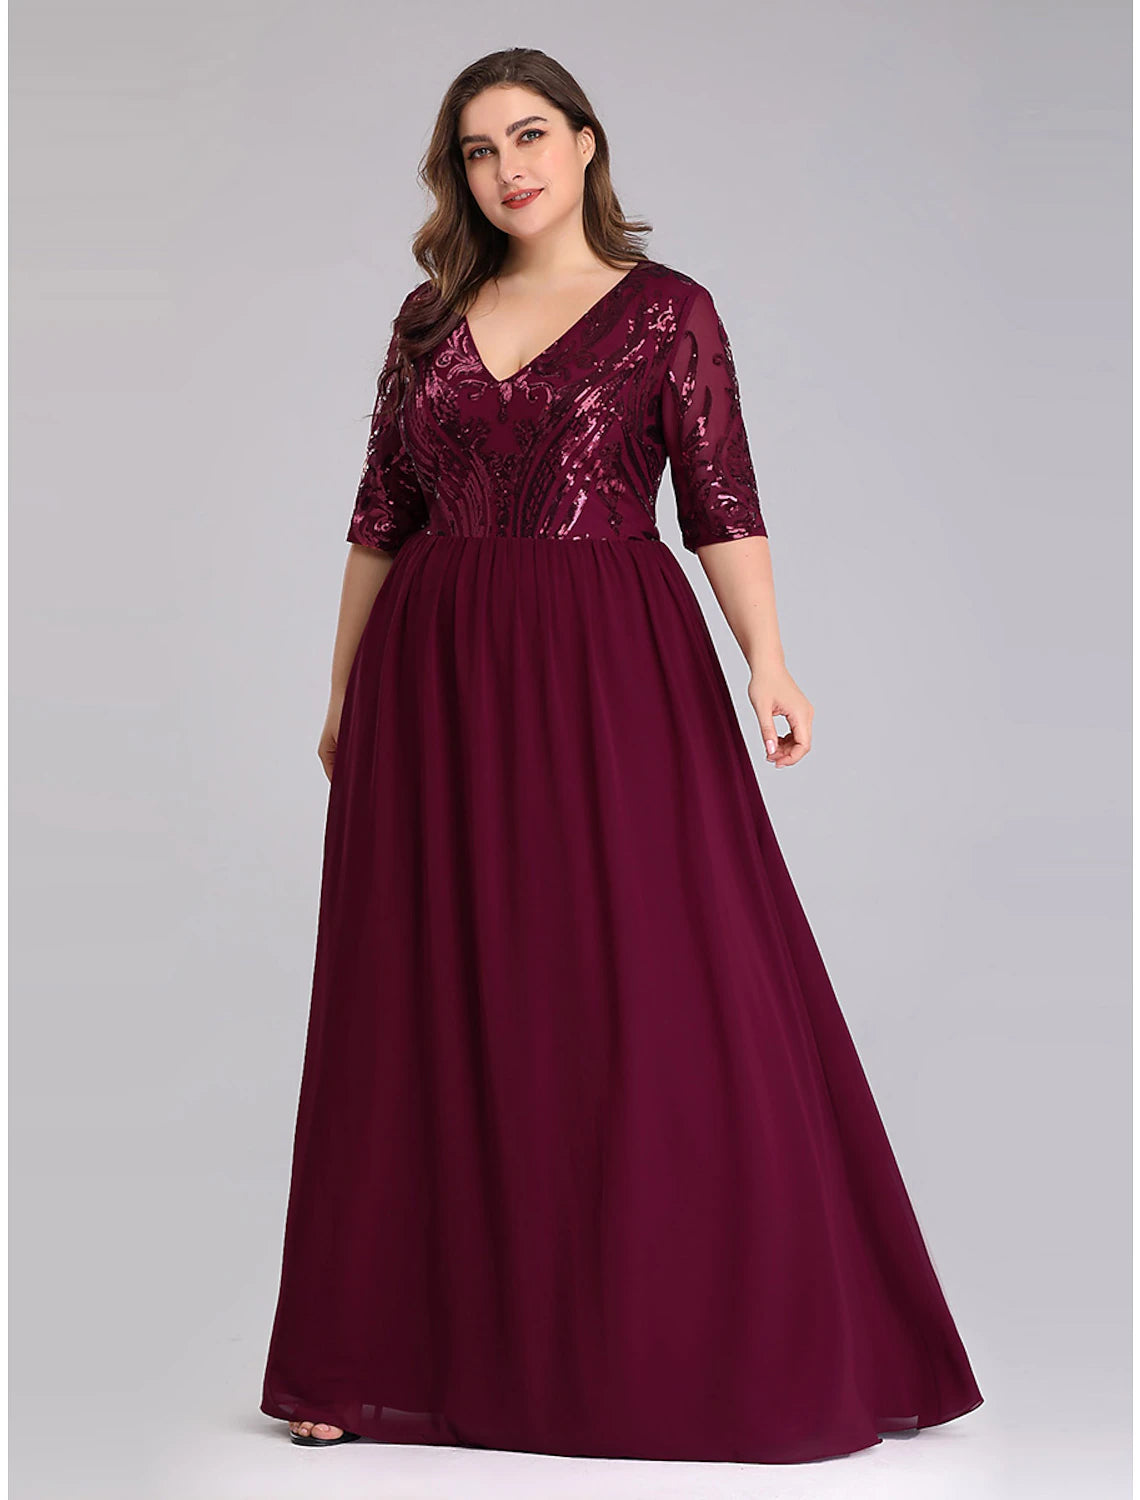 Wholesale A-Line Prom Dresses Plus Size Dress Wedding Guest Floor Leng ...